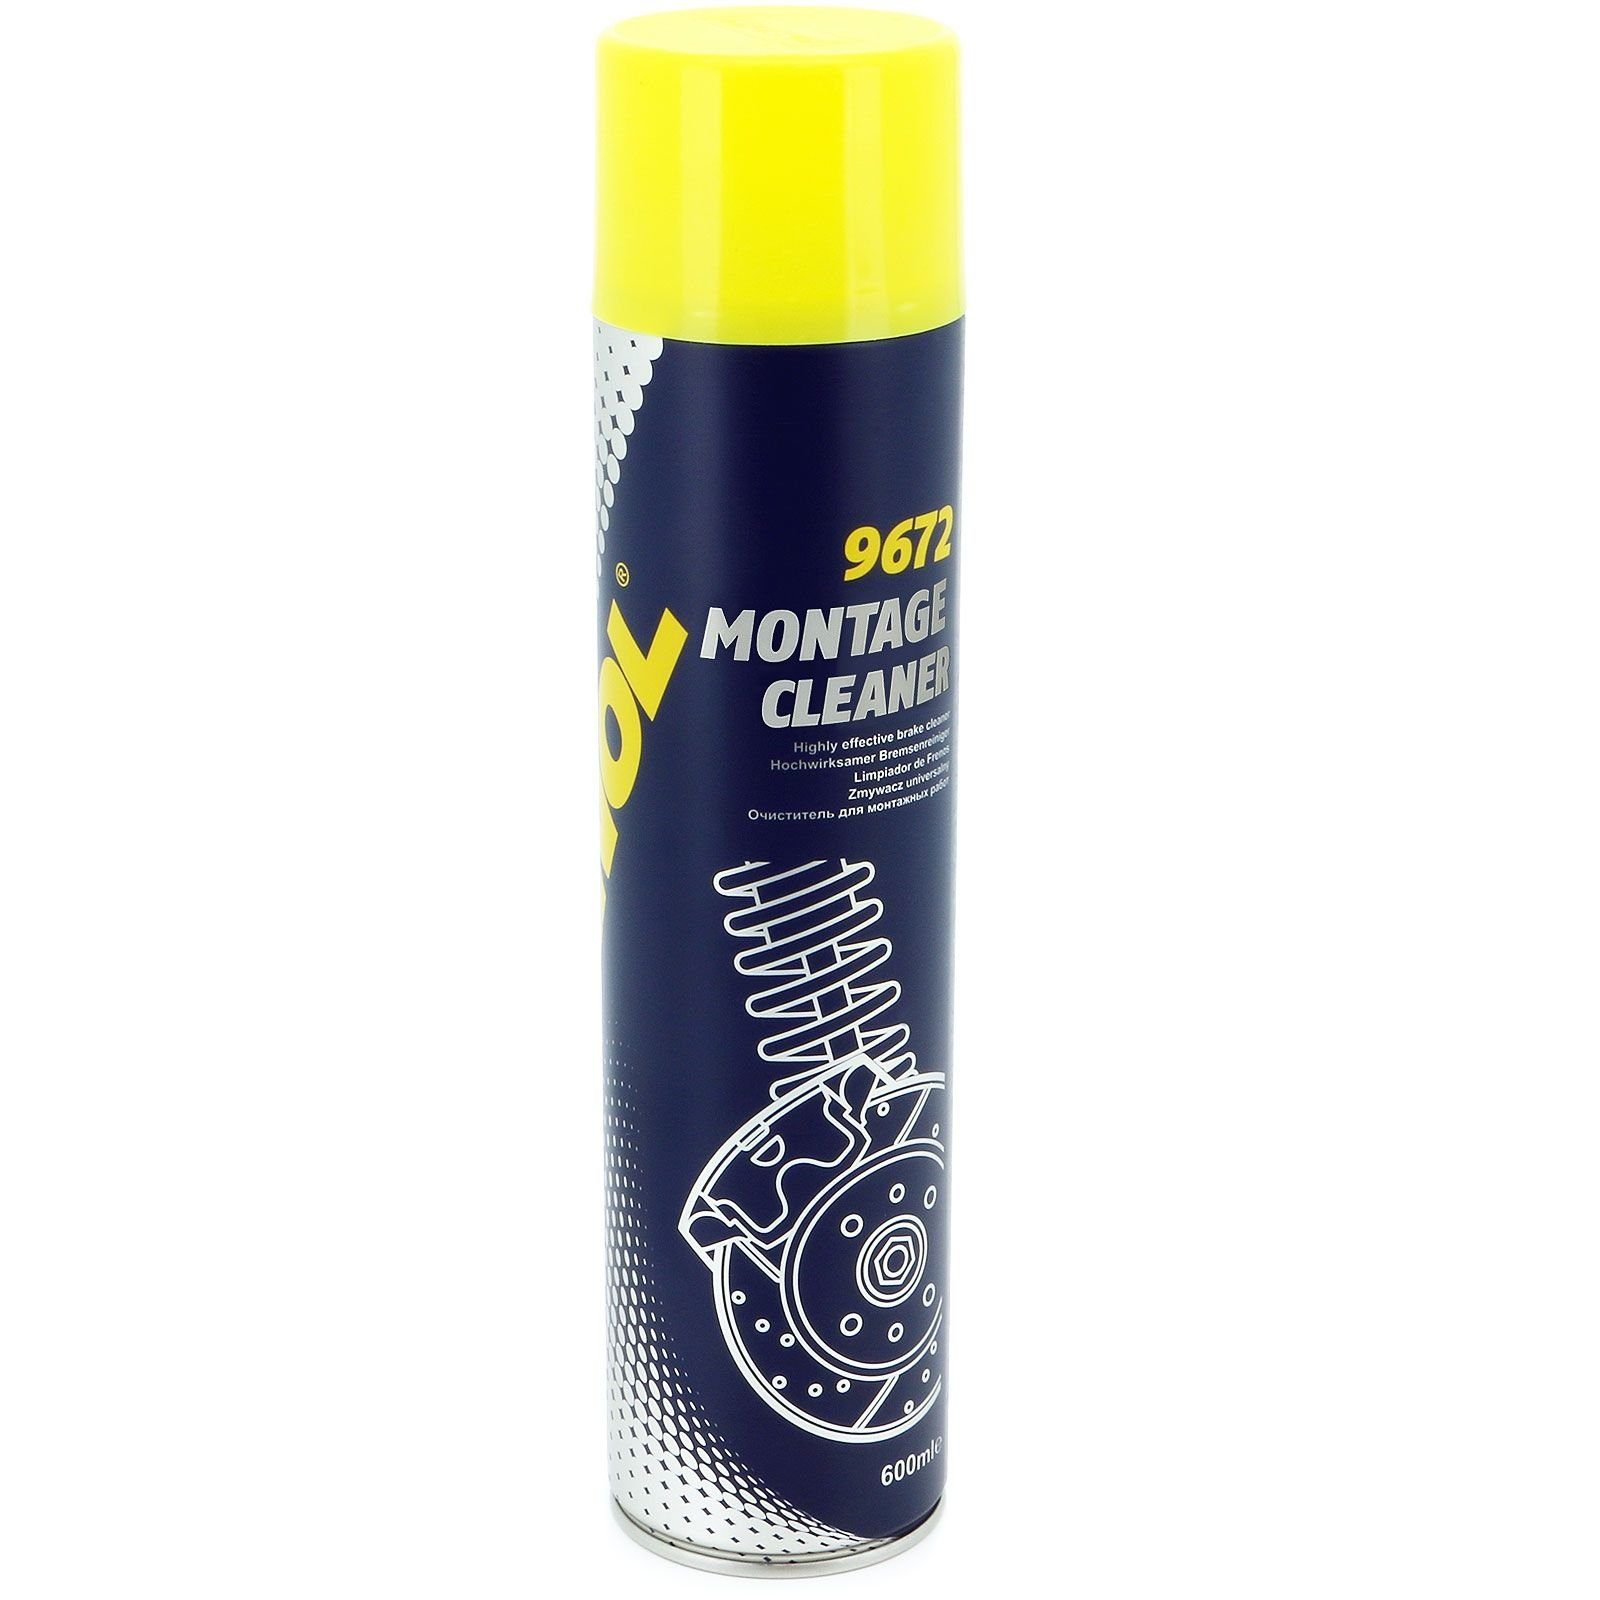 Mannol Bremsenreiniger Montage Cleaner 600 ml Typ 9672 Auto-Reinigungsmittel